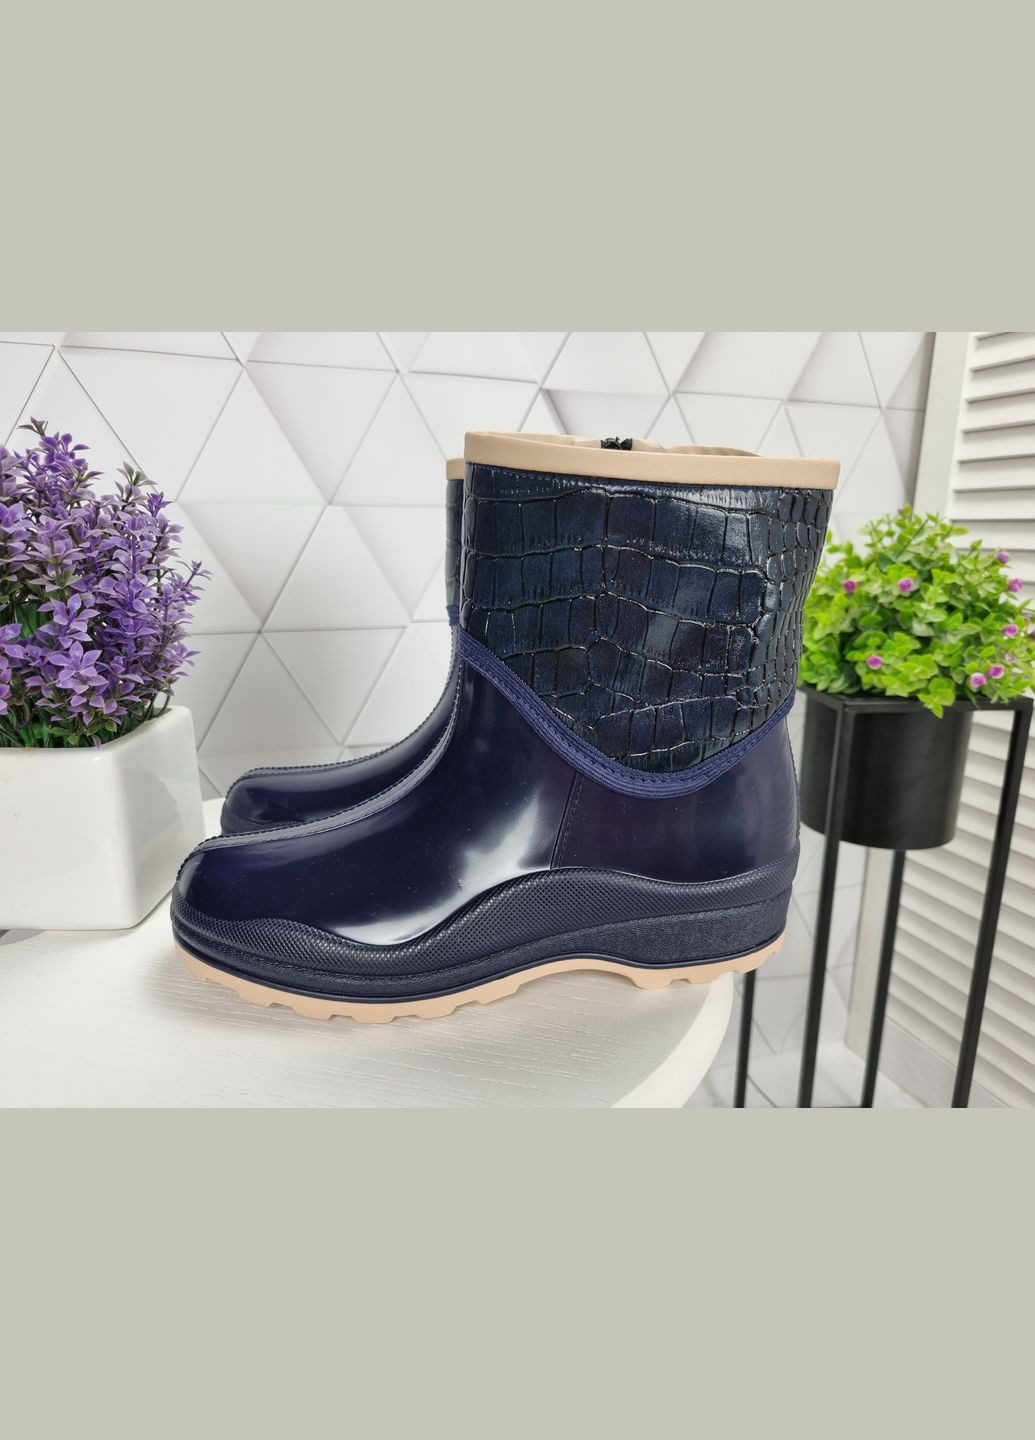 ботинки полусапоги резиновые утепленные на флисе непромокаемые синие с серым (23,5 см) sp-2826 No Brand